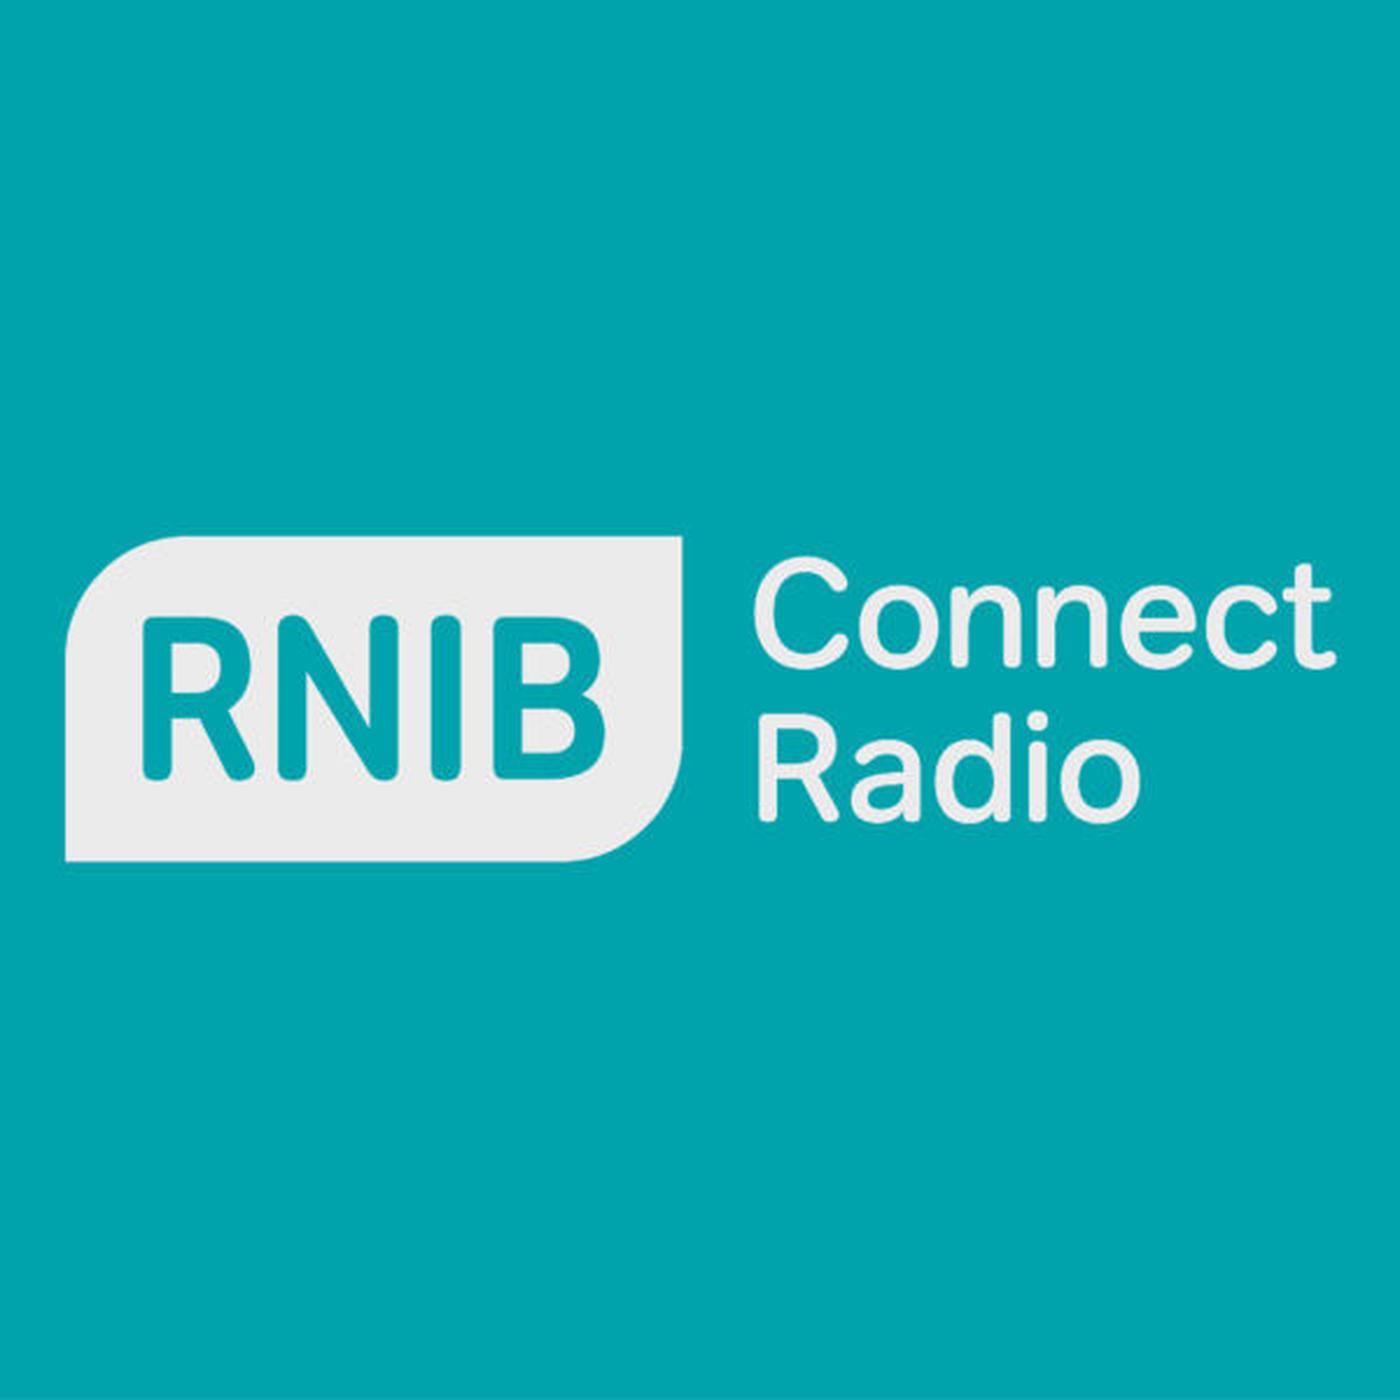 Radijas internetu Connect Radio